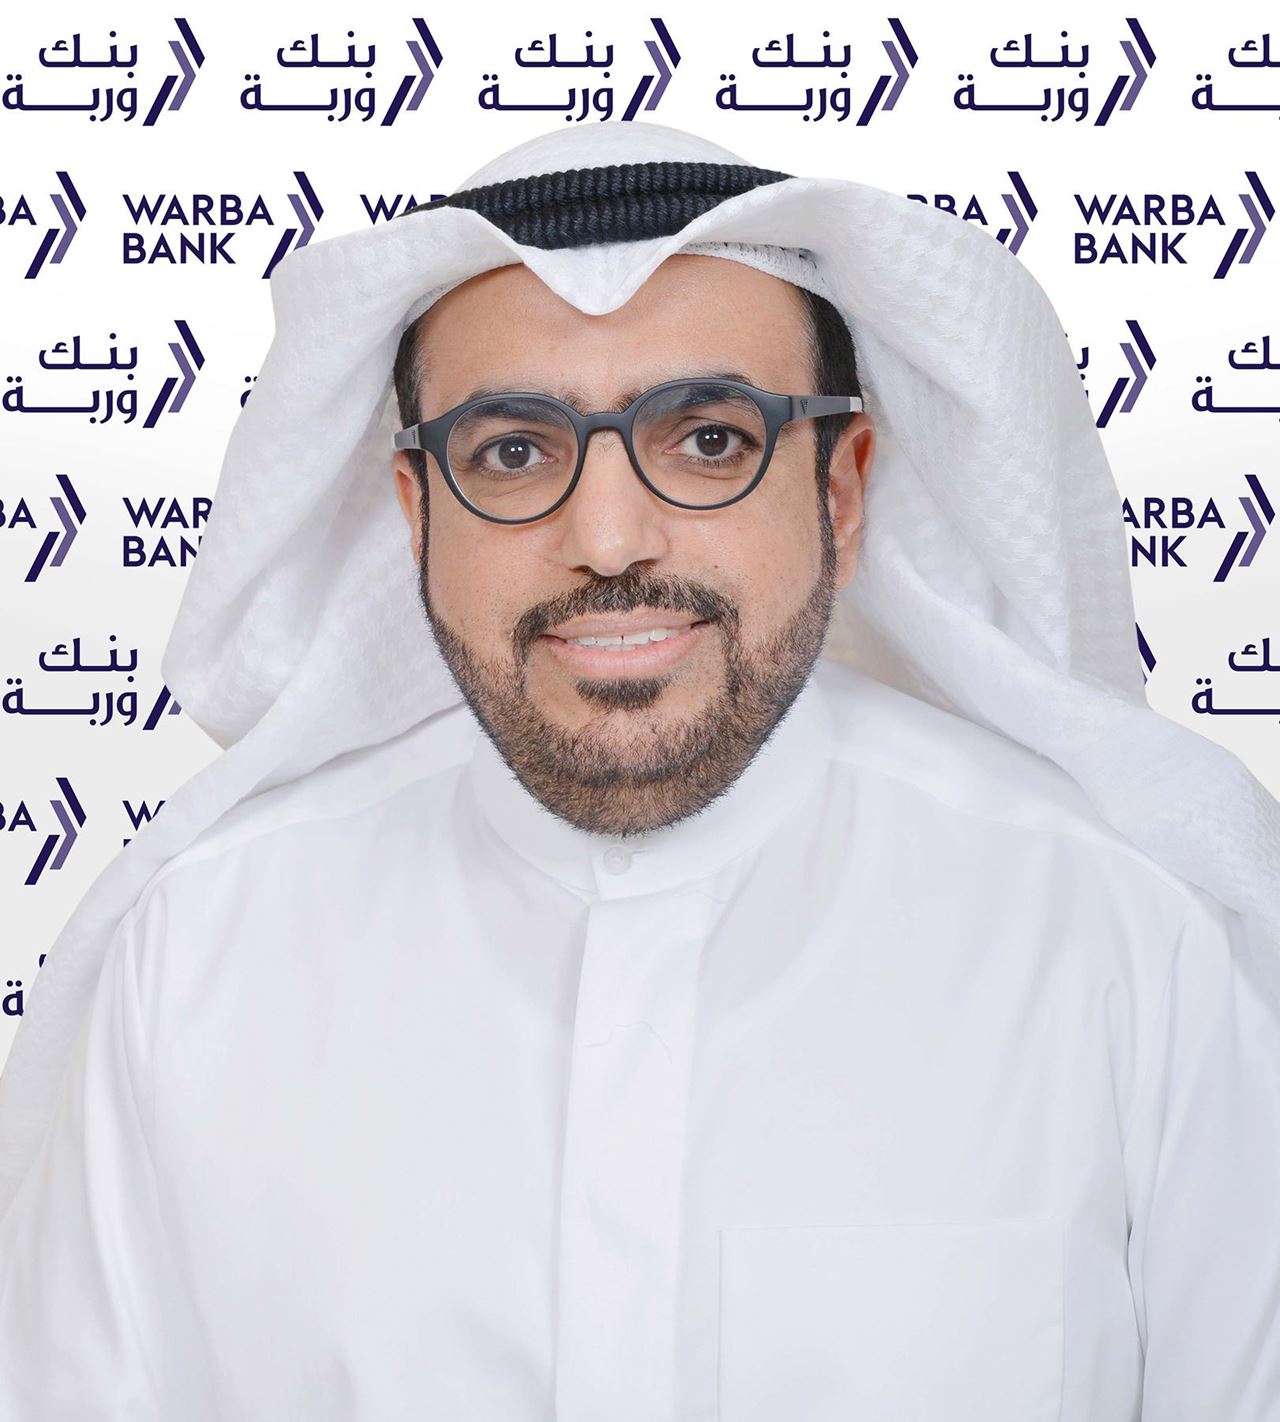 شاهين حمد الغانم، الرئيس التنفيذي لبنك وربة